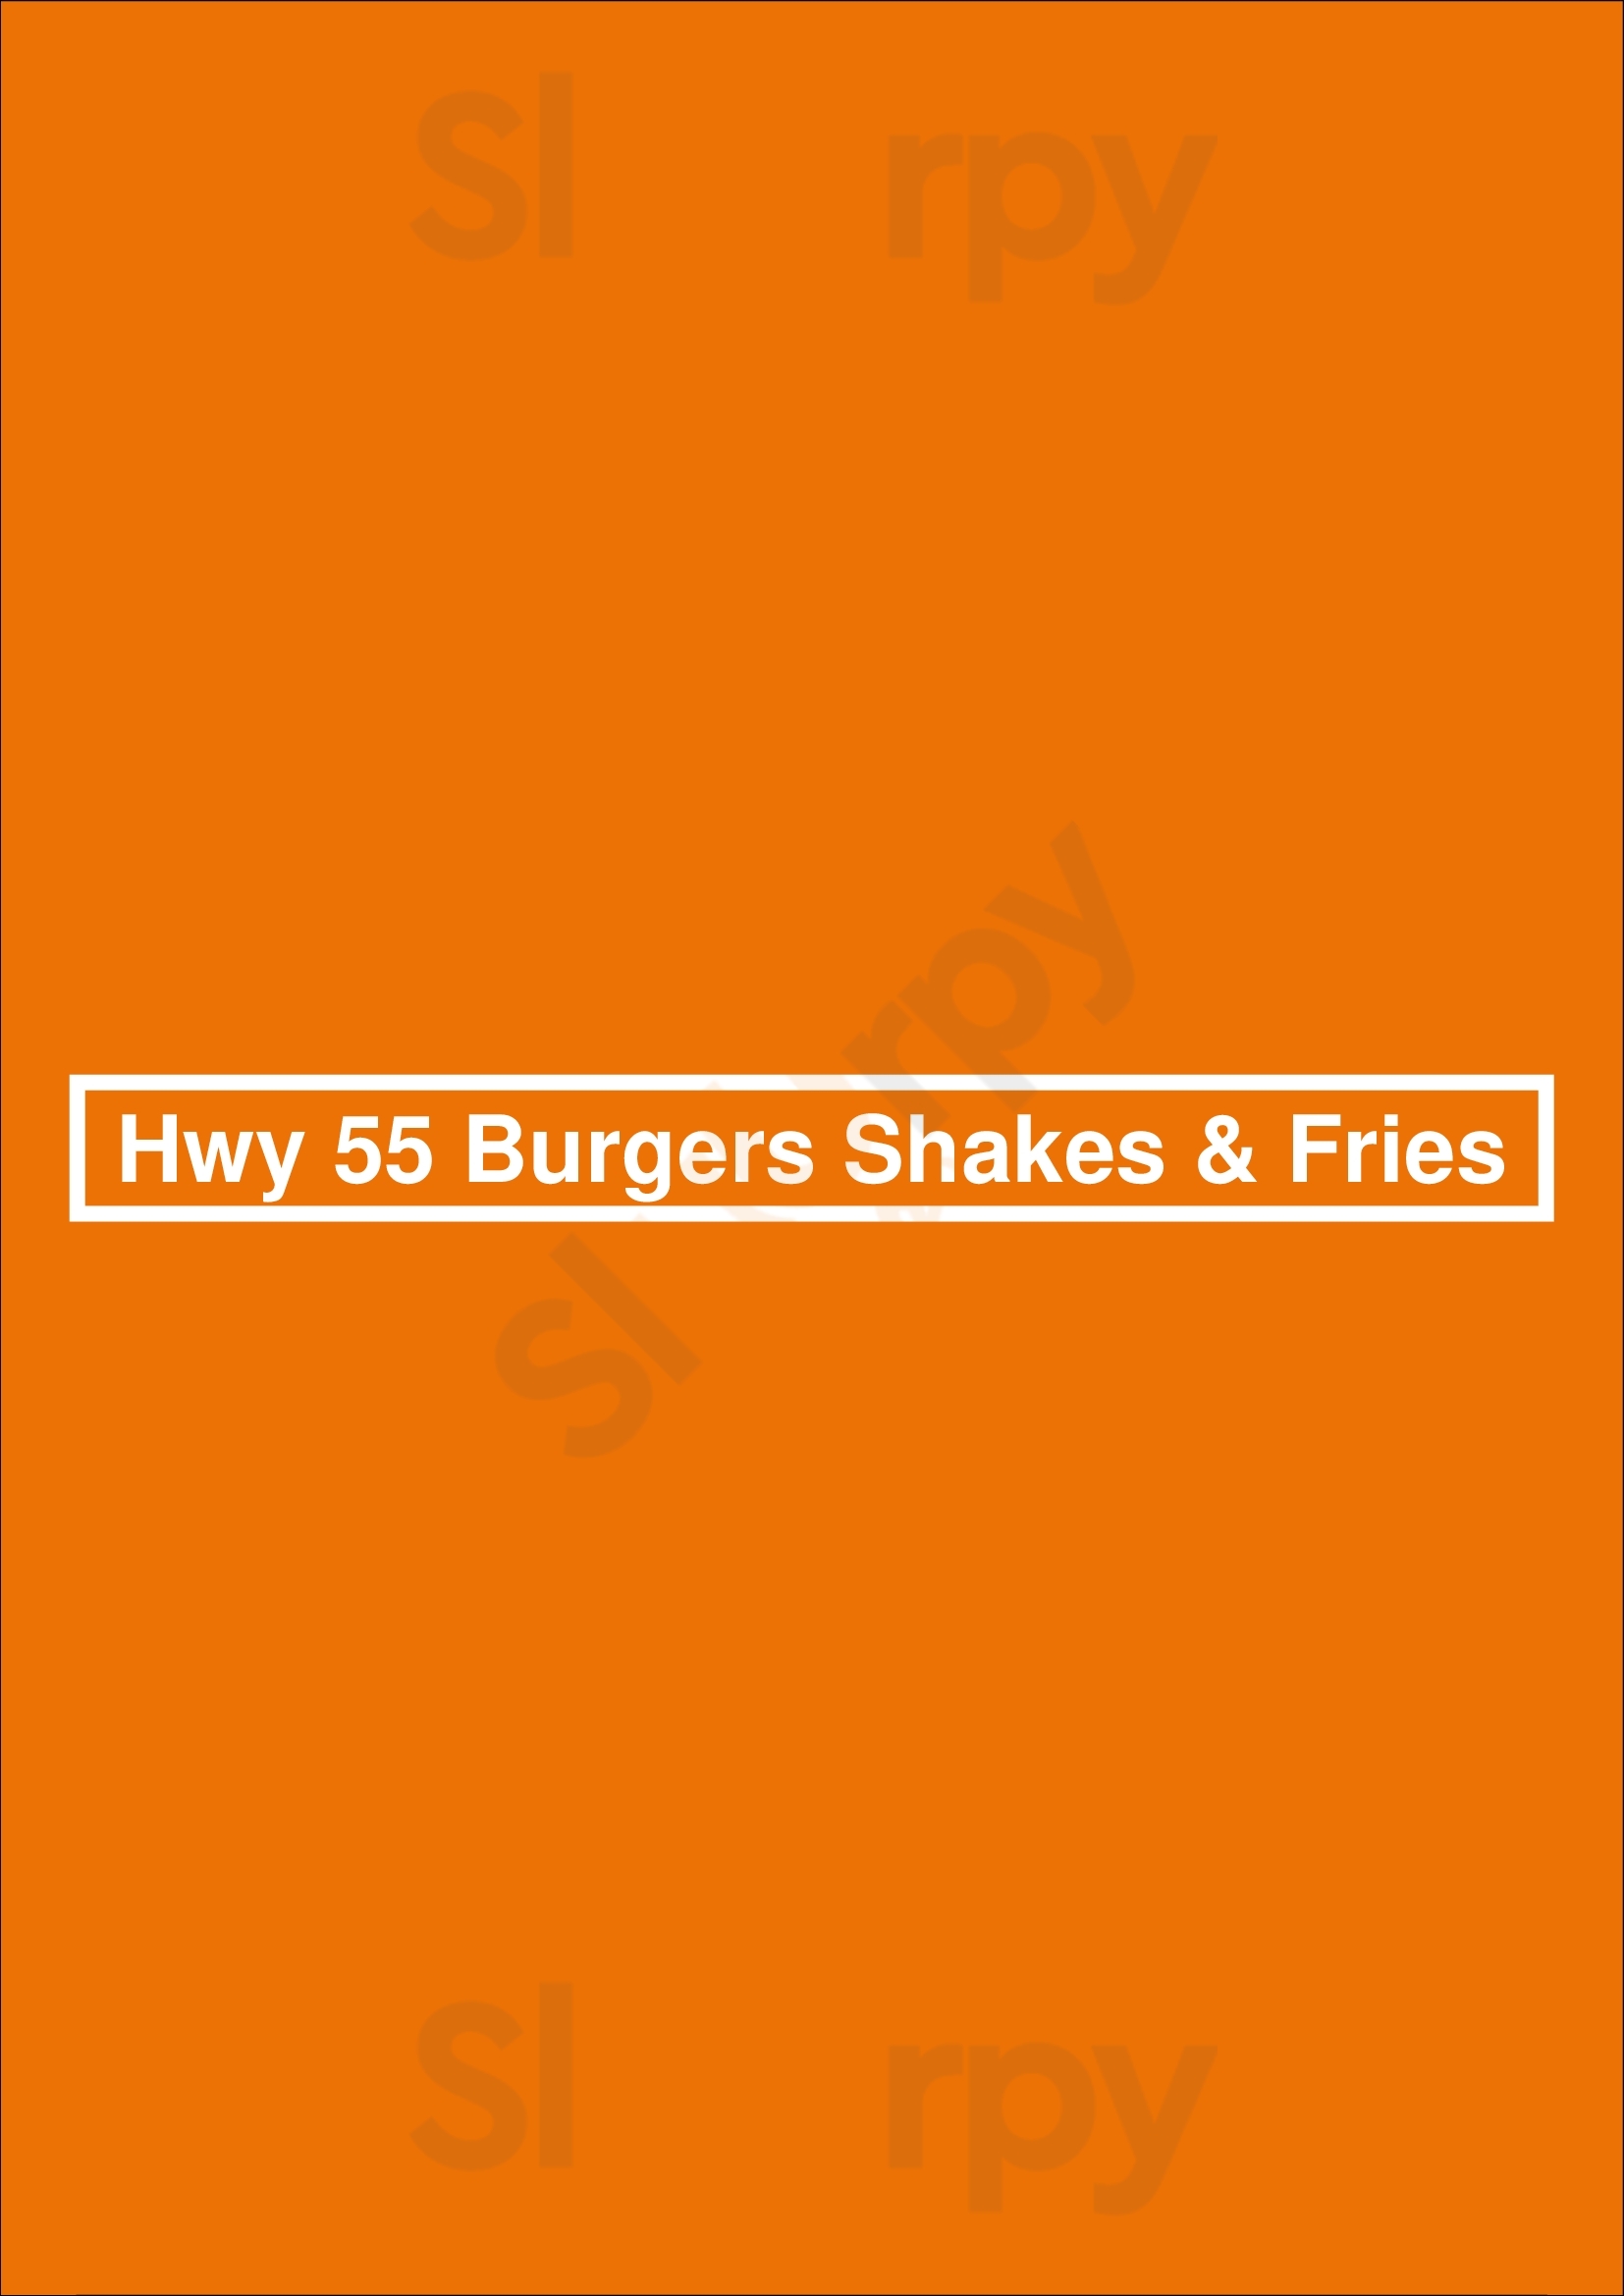 Hwy 55 Burgers Shakes & Fries Searcy Menu - 1